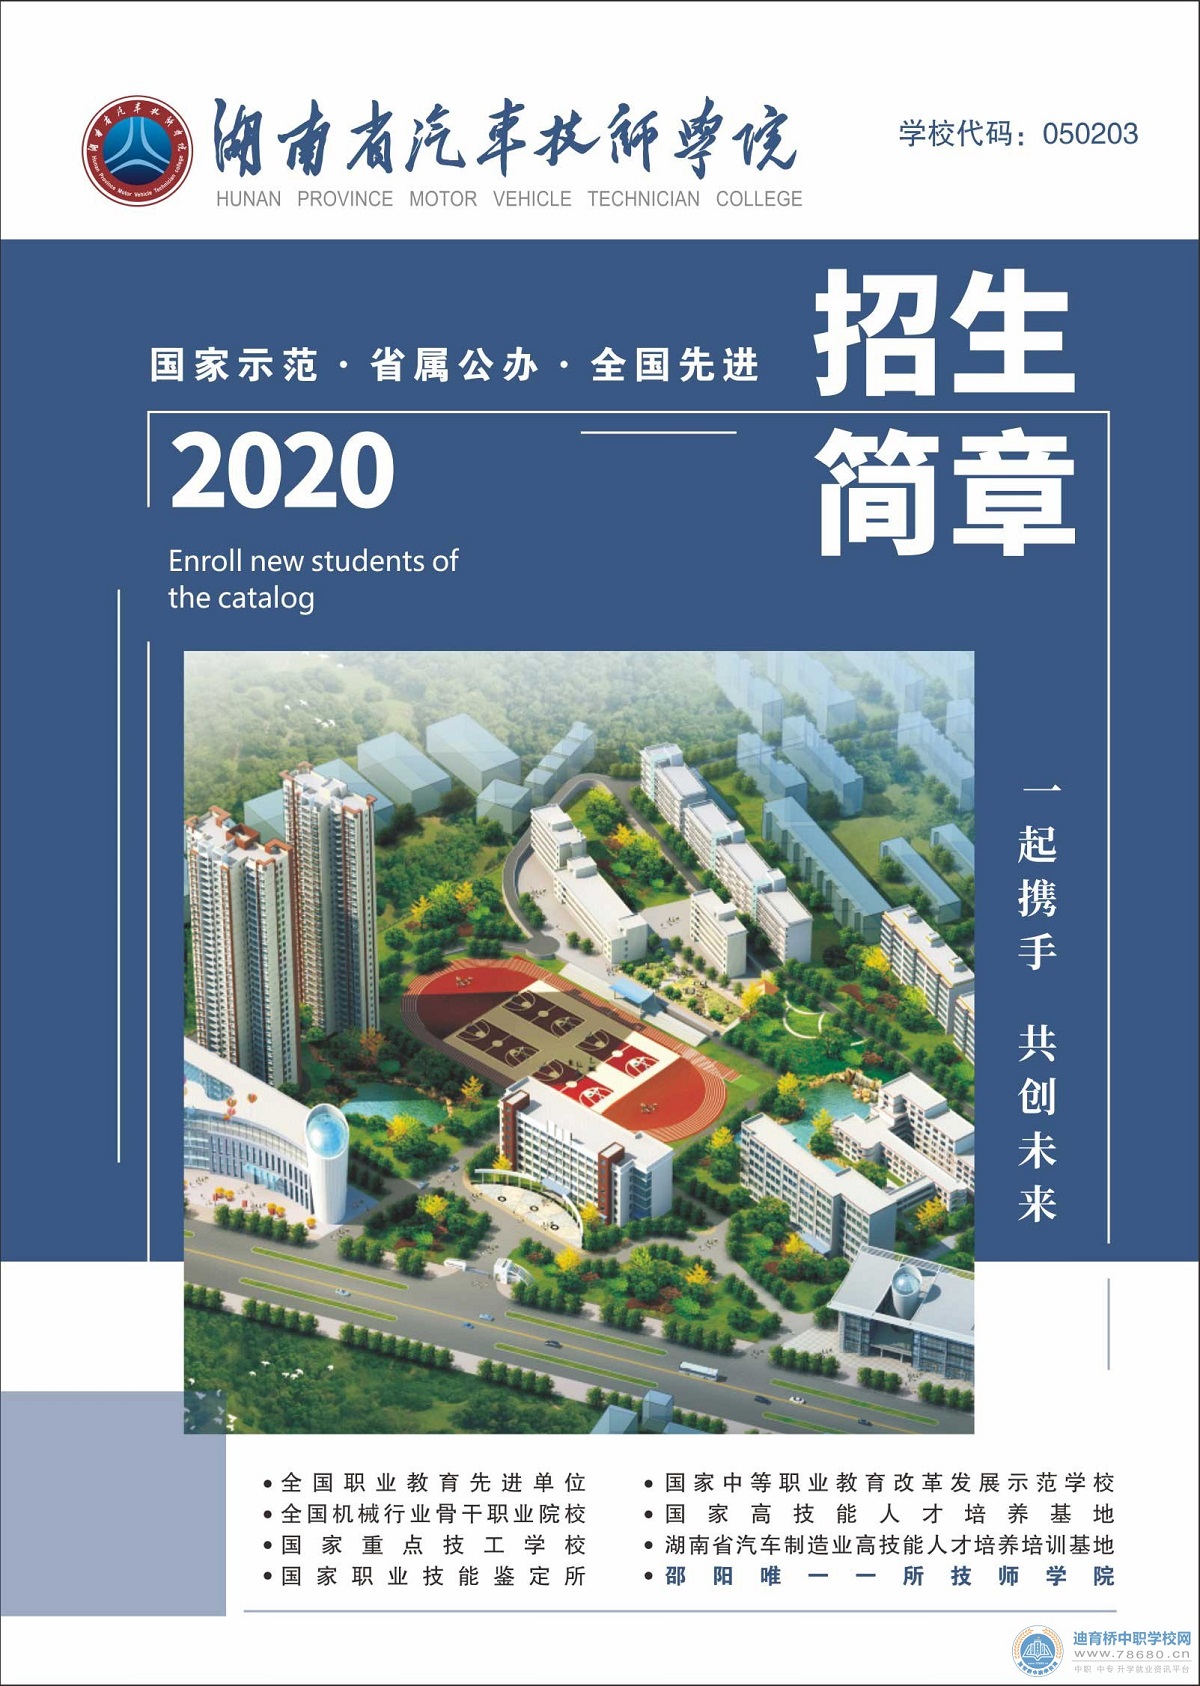 
湖南省汽车技师学院2020年招生简章